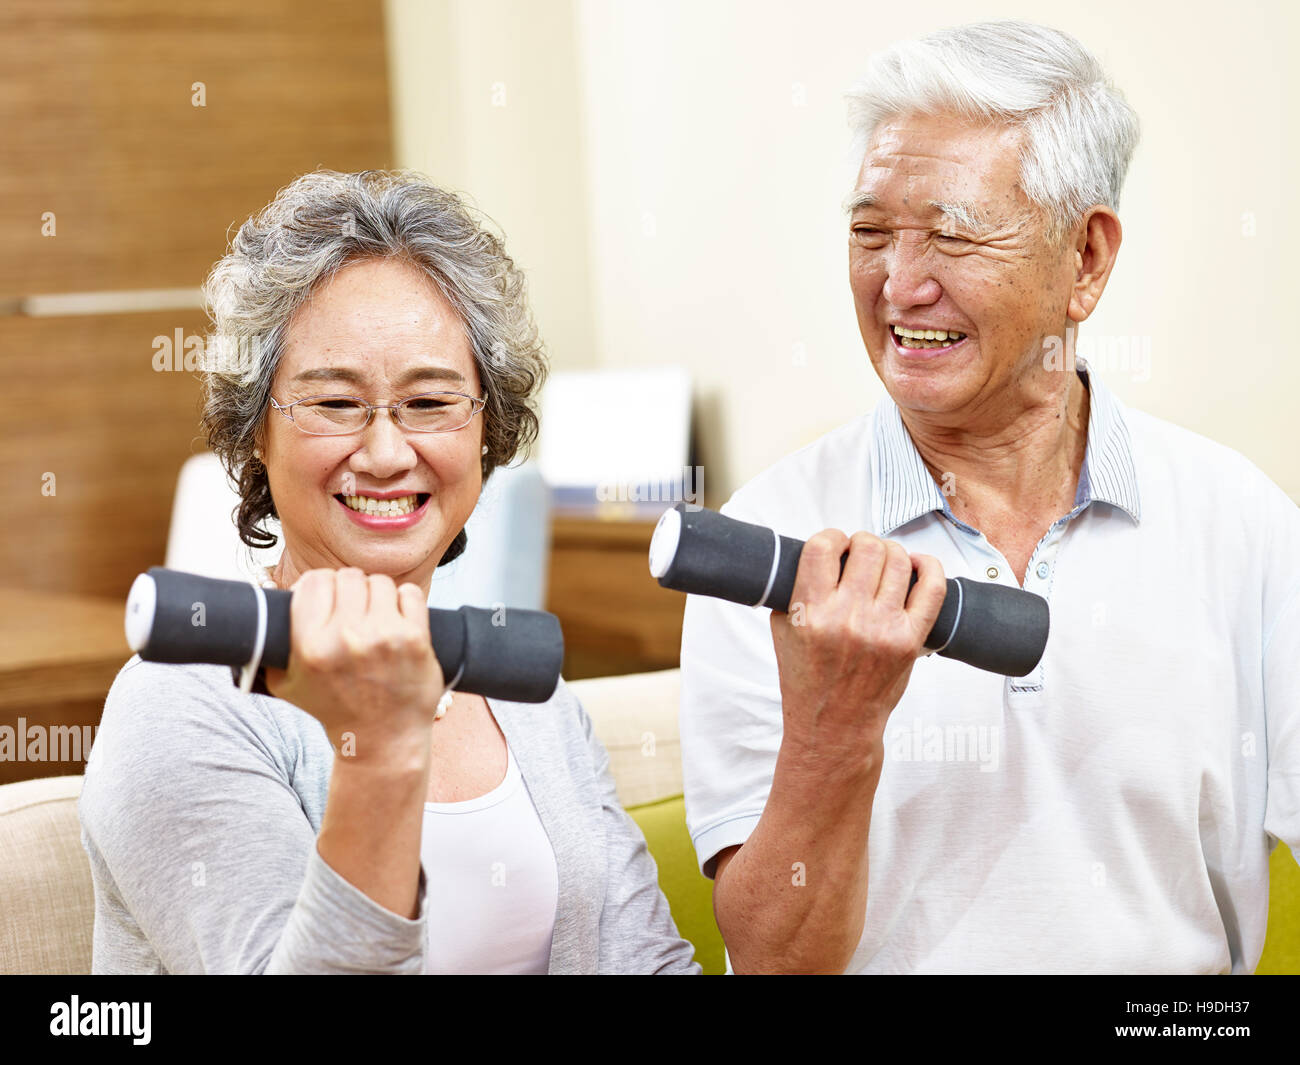 gerne älteres paar trainieren mit Hanteln, glücklich und lächelnd Stockfoto